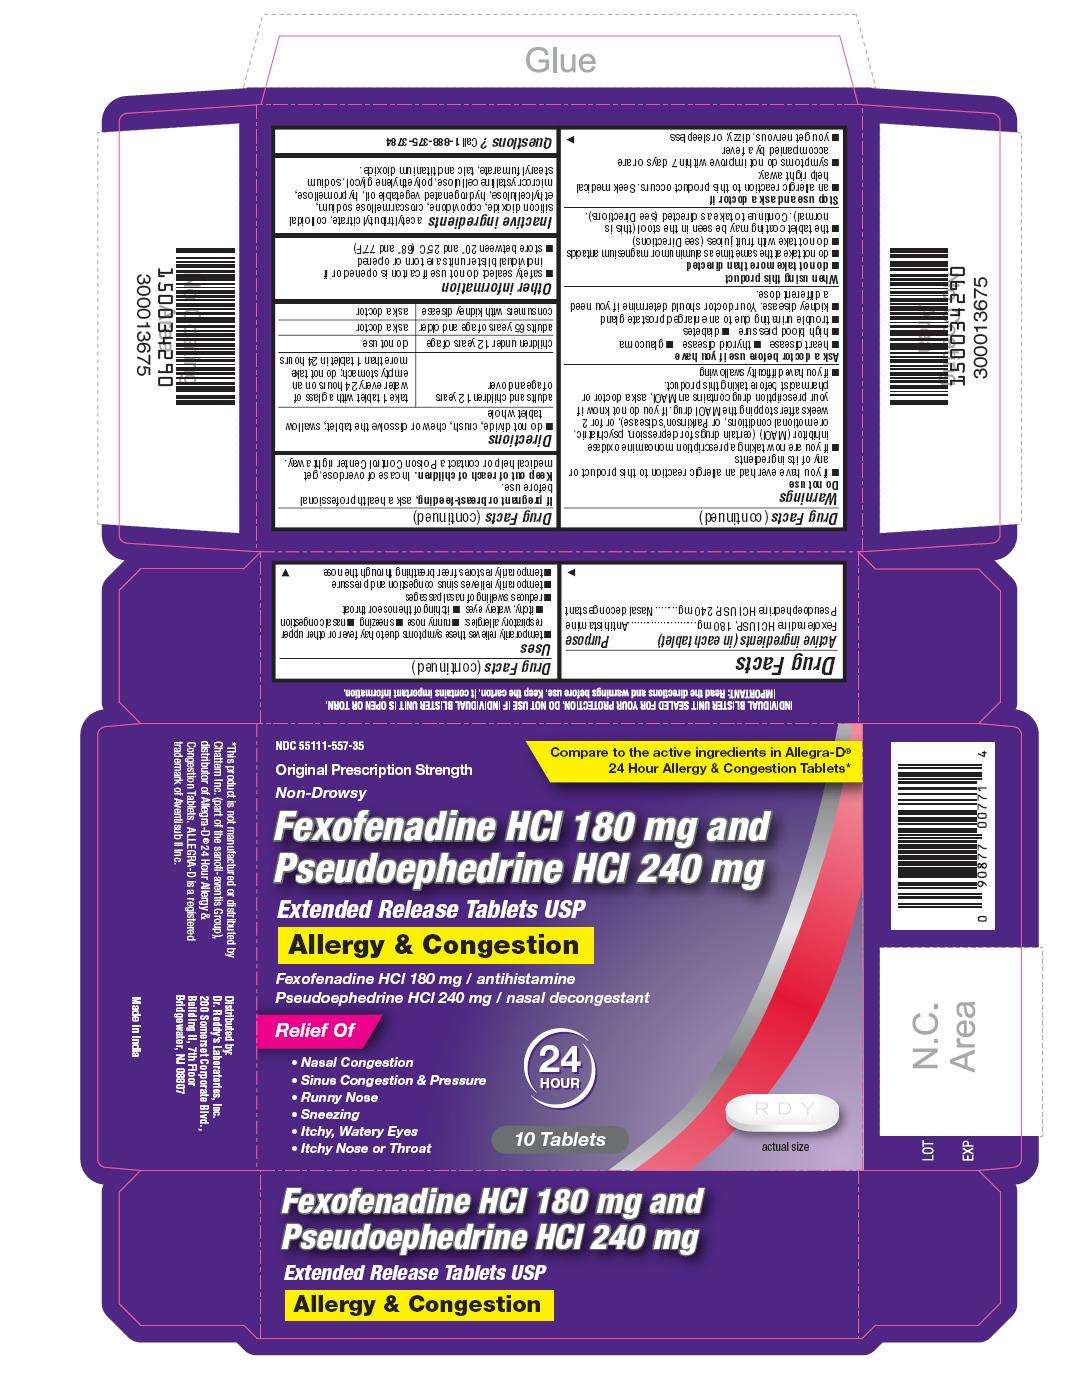 Fexofenadine HCl and Pseudoephedrine HCI